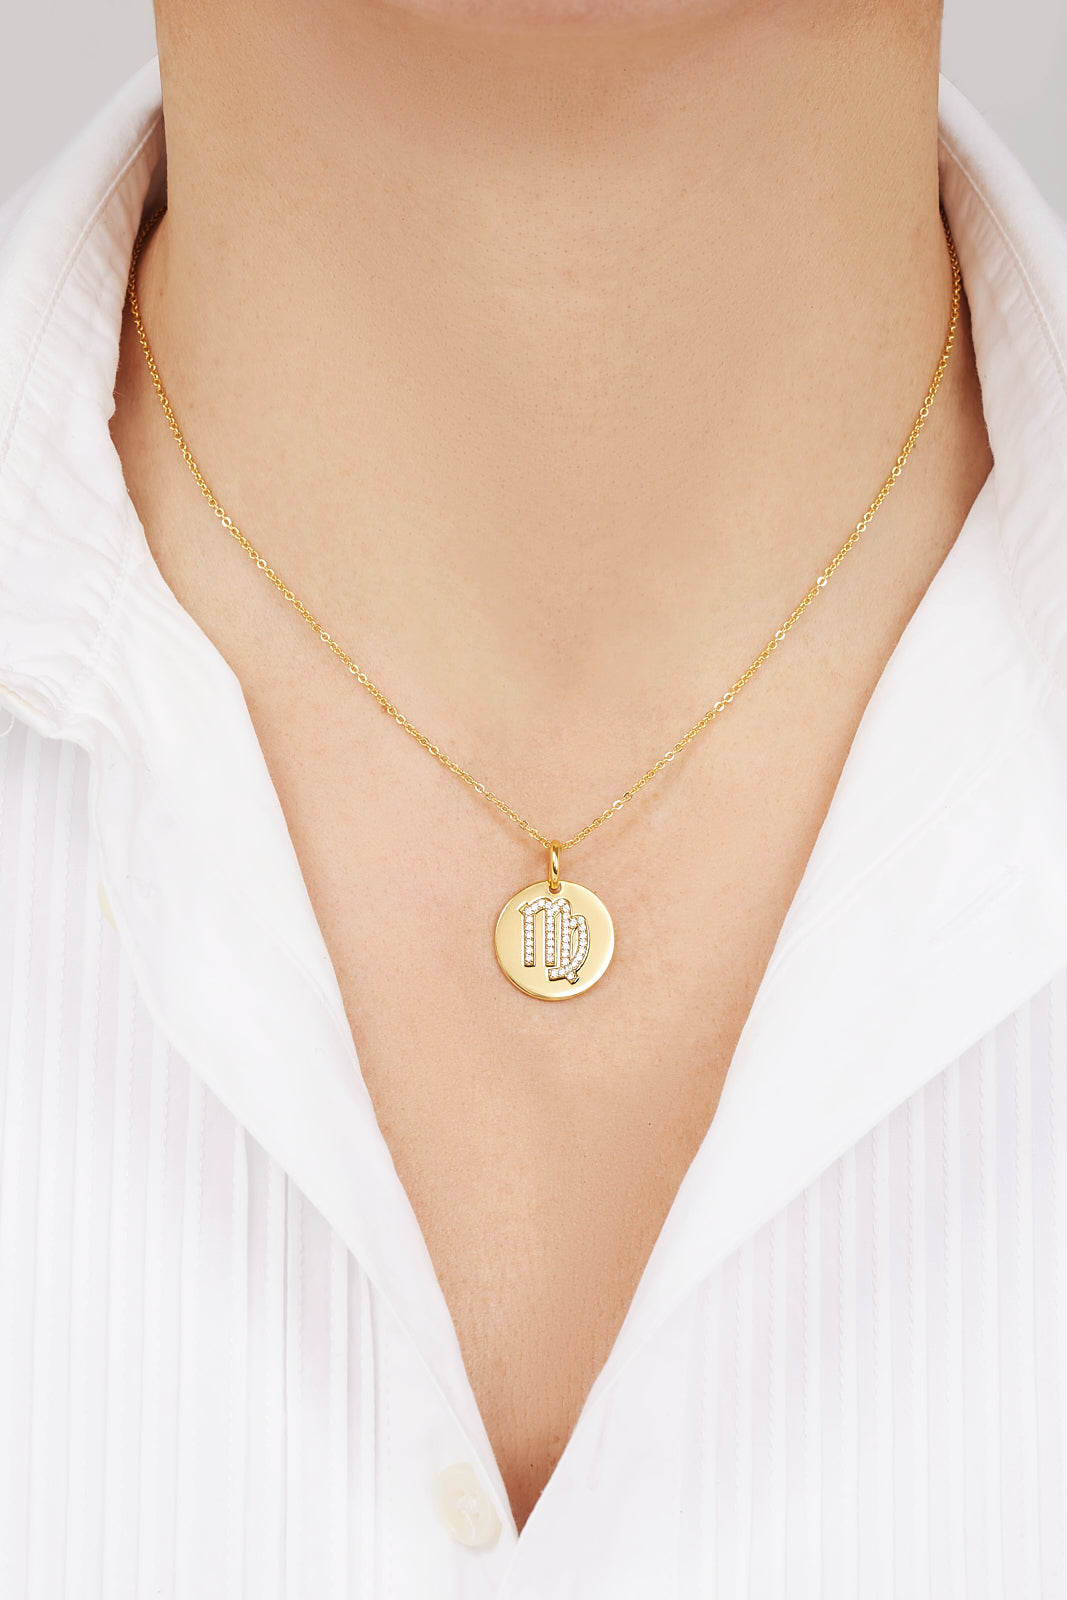 Virgo gold vermeil necklace